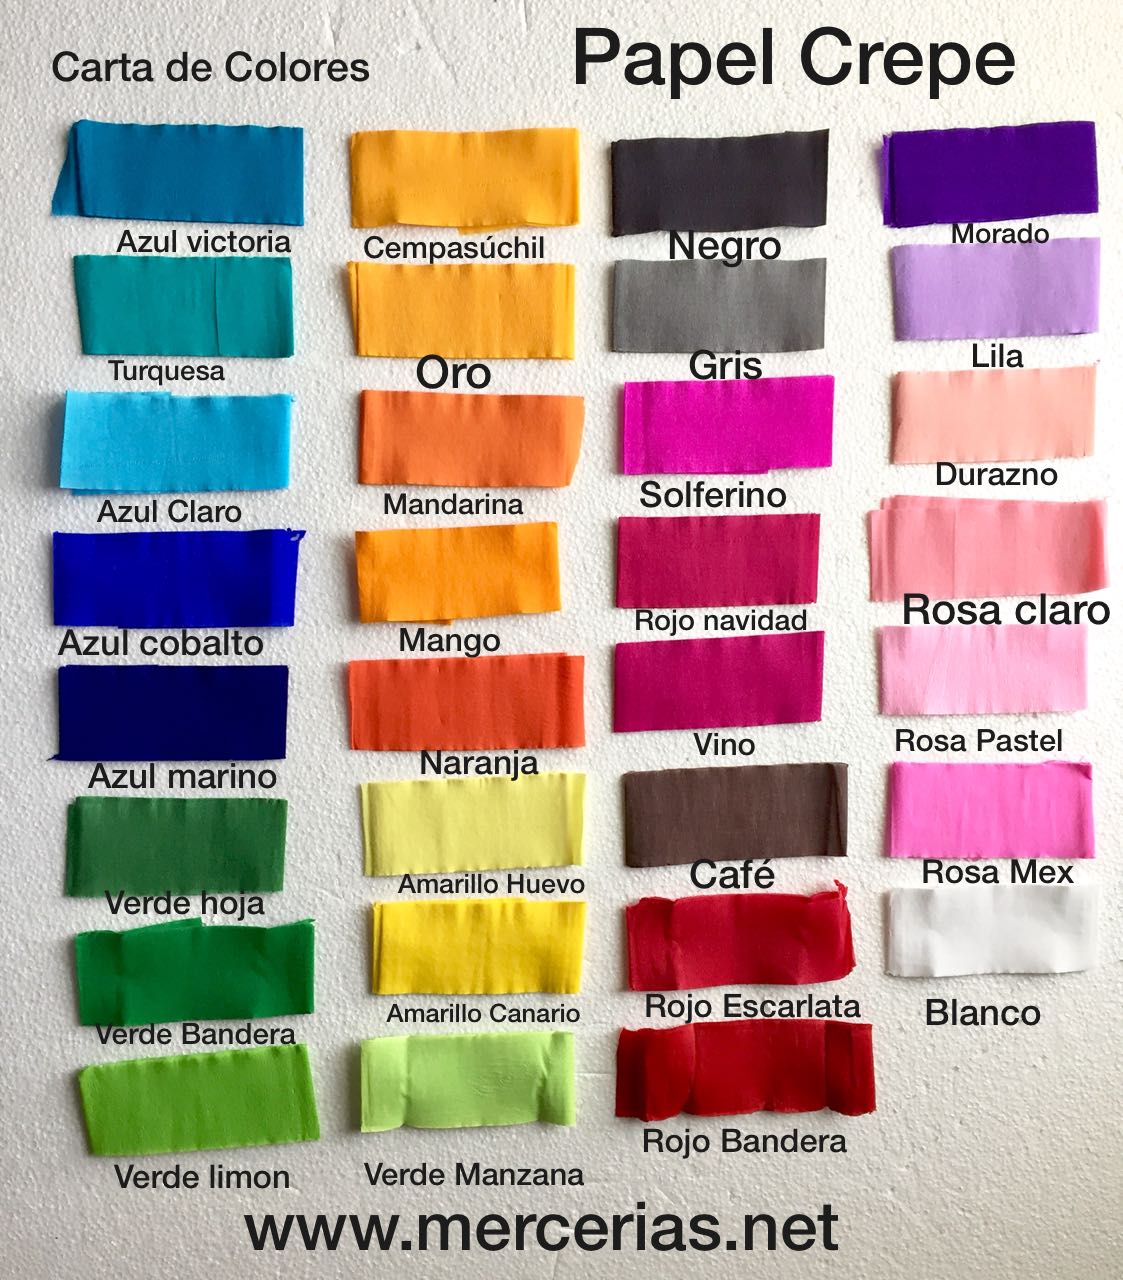 400 Pliegos De Papel Crepé, Mayoreo Variedad De Colores